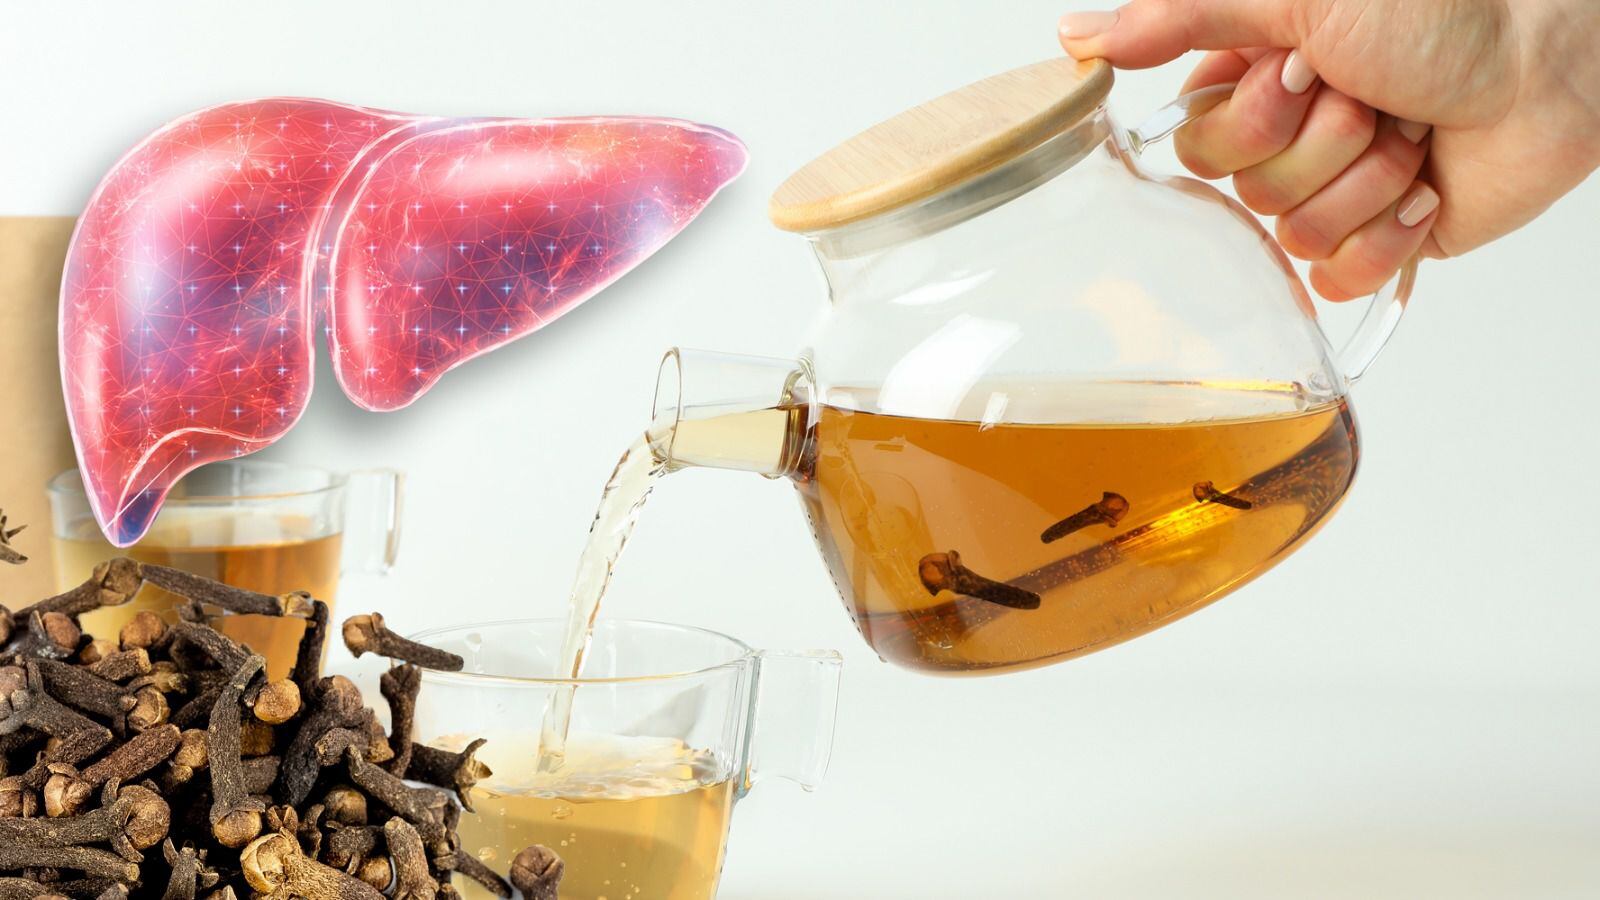 El intenso aroma y sabor del té de clavo lo han convertido en una alternativa medicinal en la creencia popular. (Foto: Especial / El Financiero).